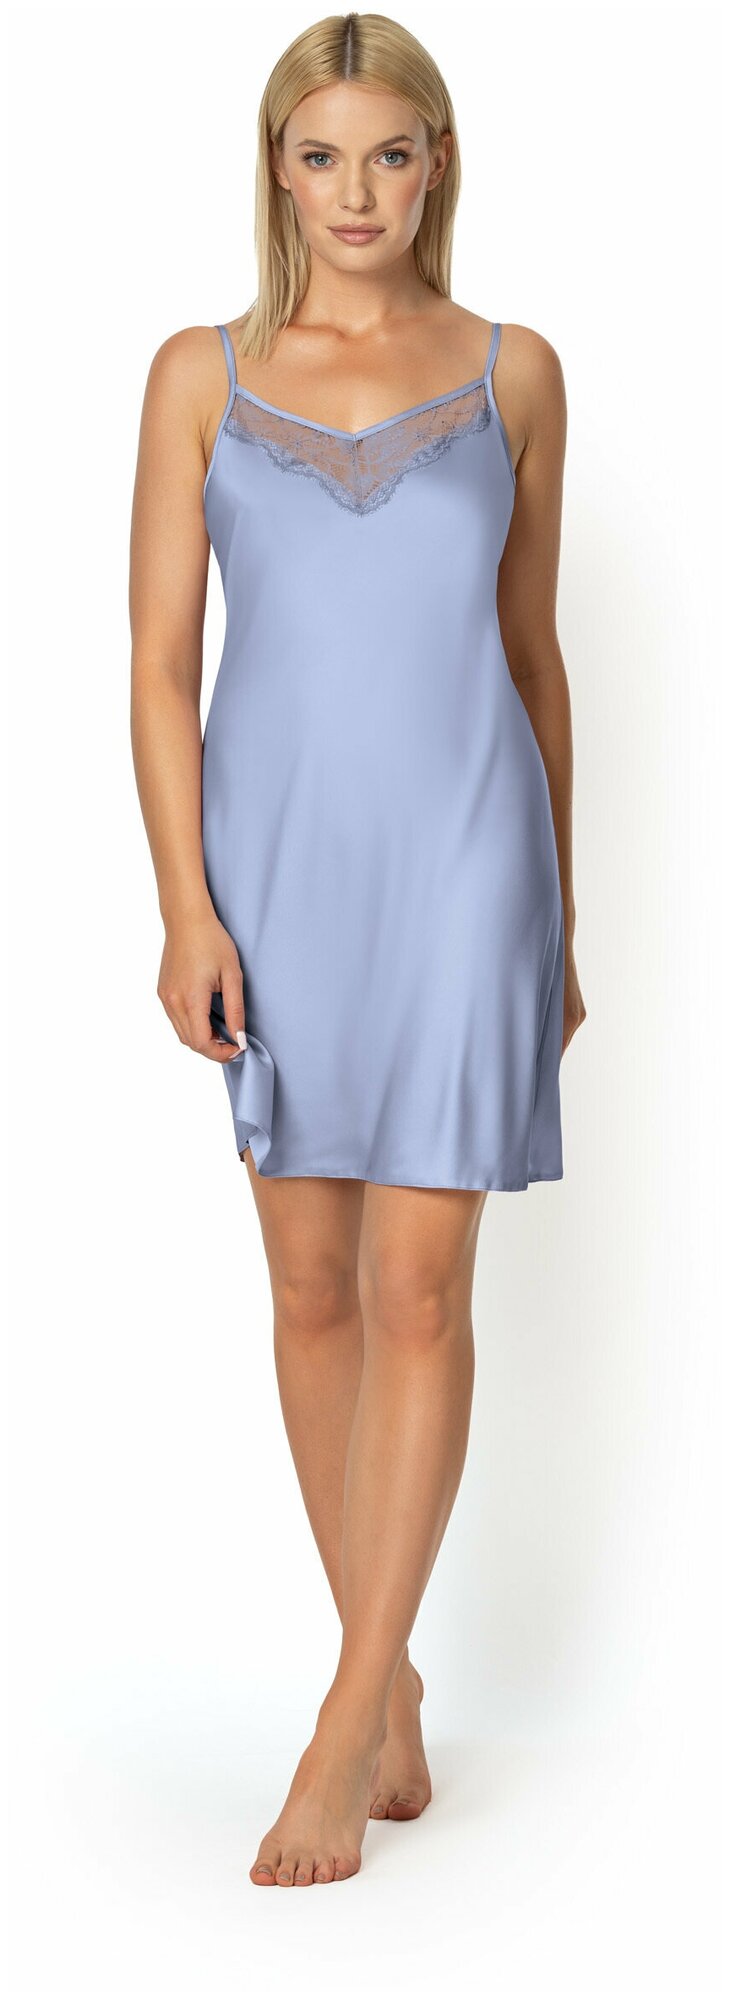 Сорочка Nipplex удлиненная, без рукава, размер 44, голубой - фотография № 1